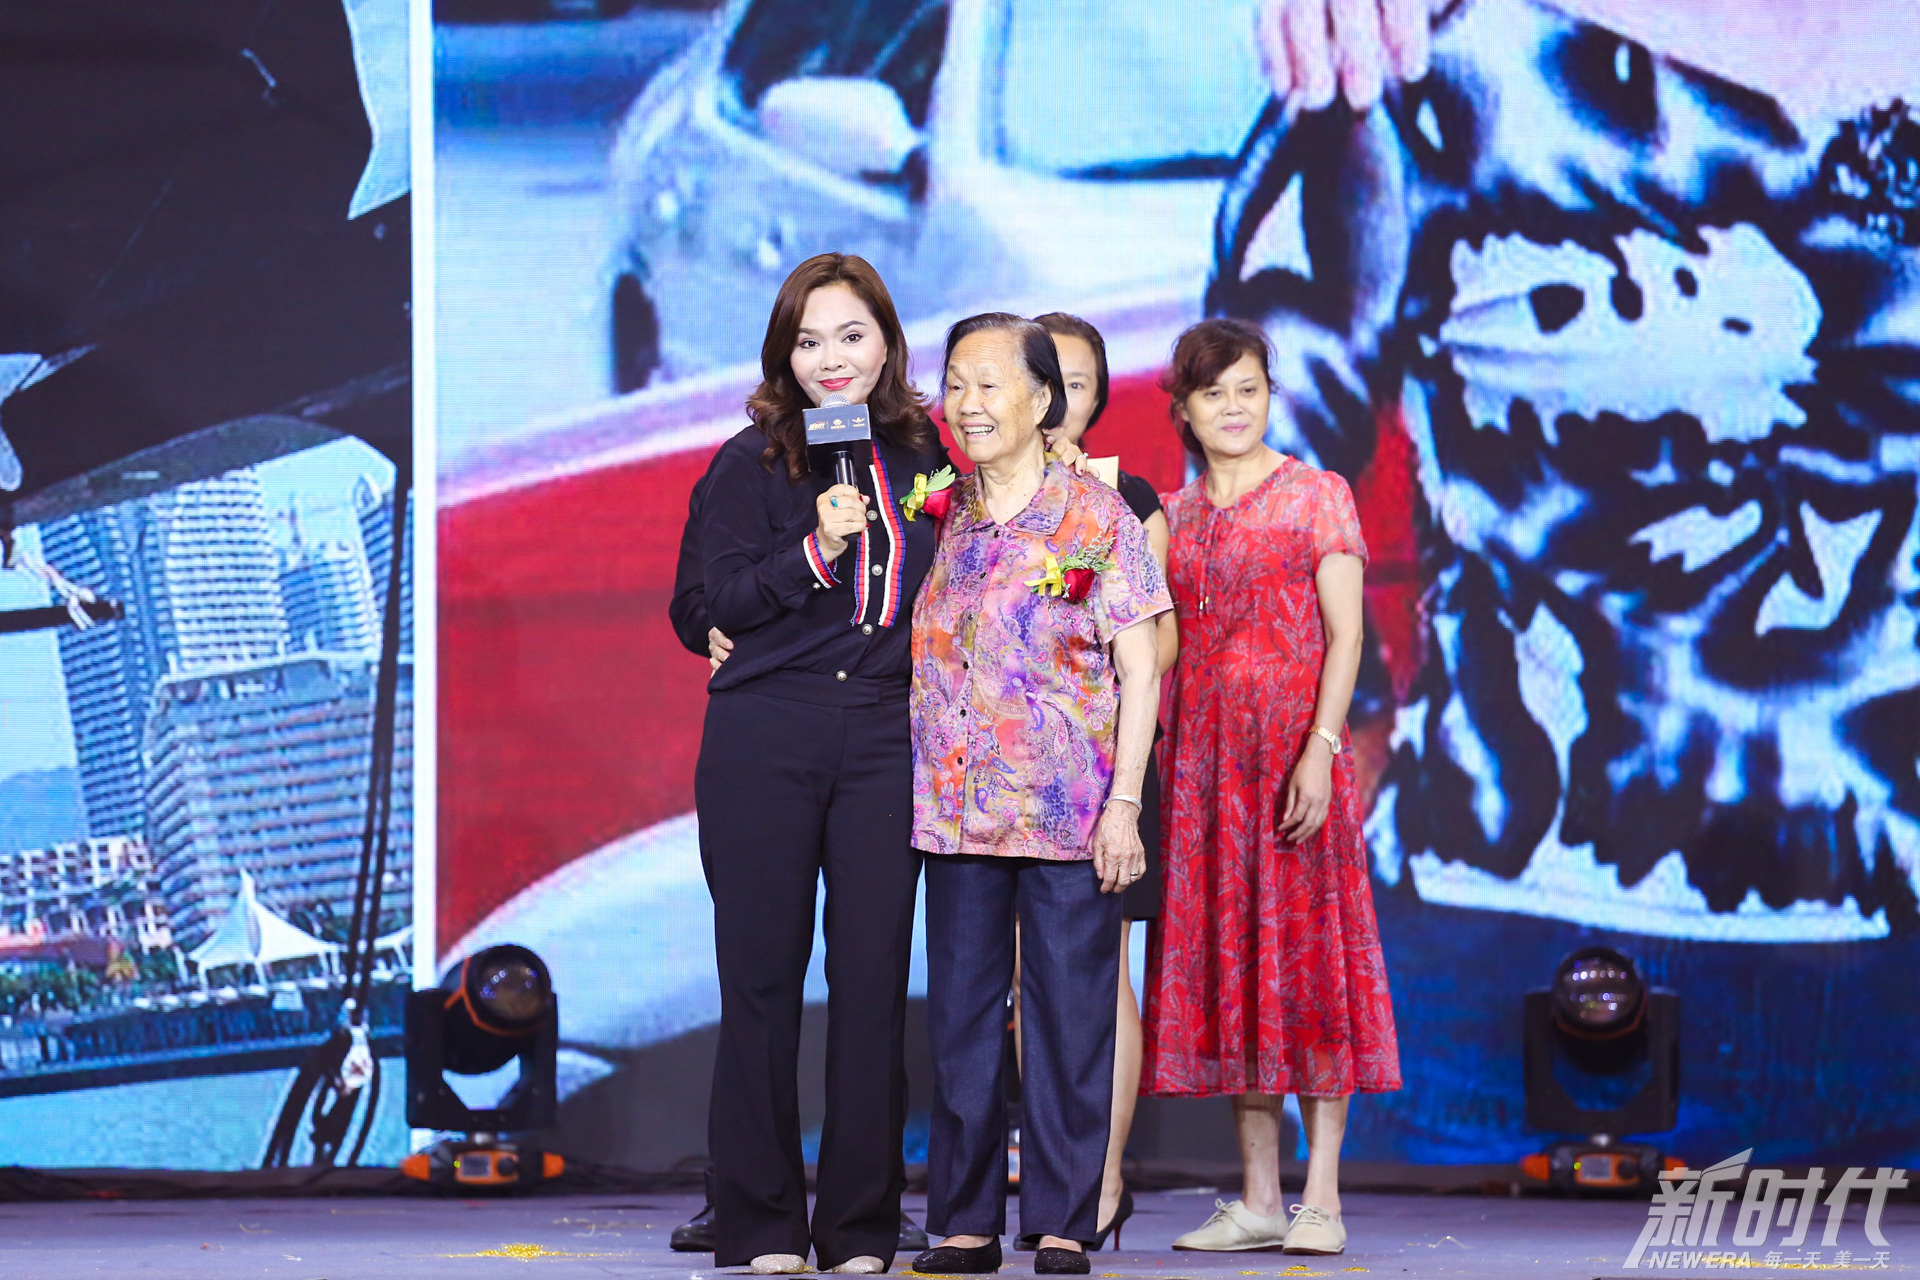 训伊基金会创始人魏蓉女士宣布10年资助10000名残疾人